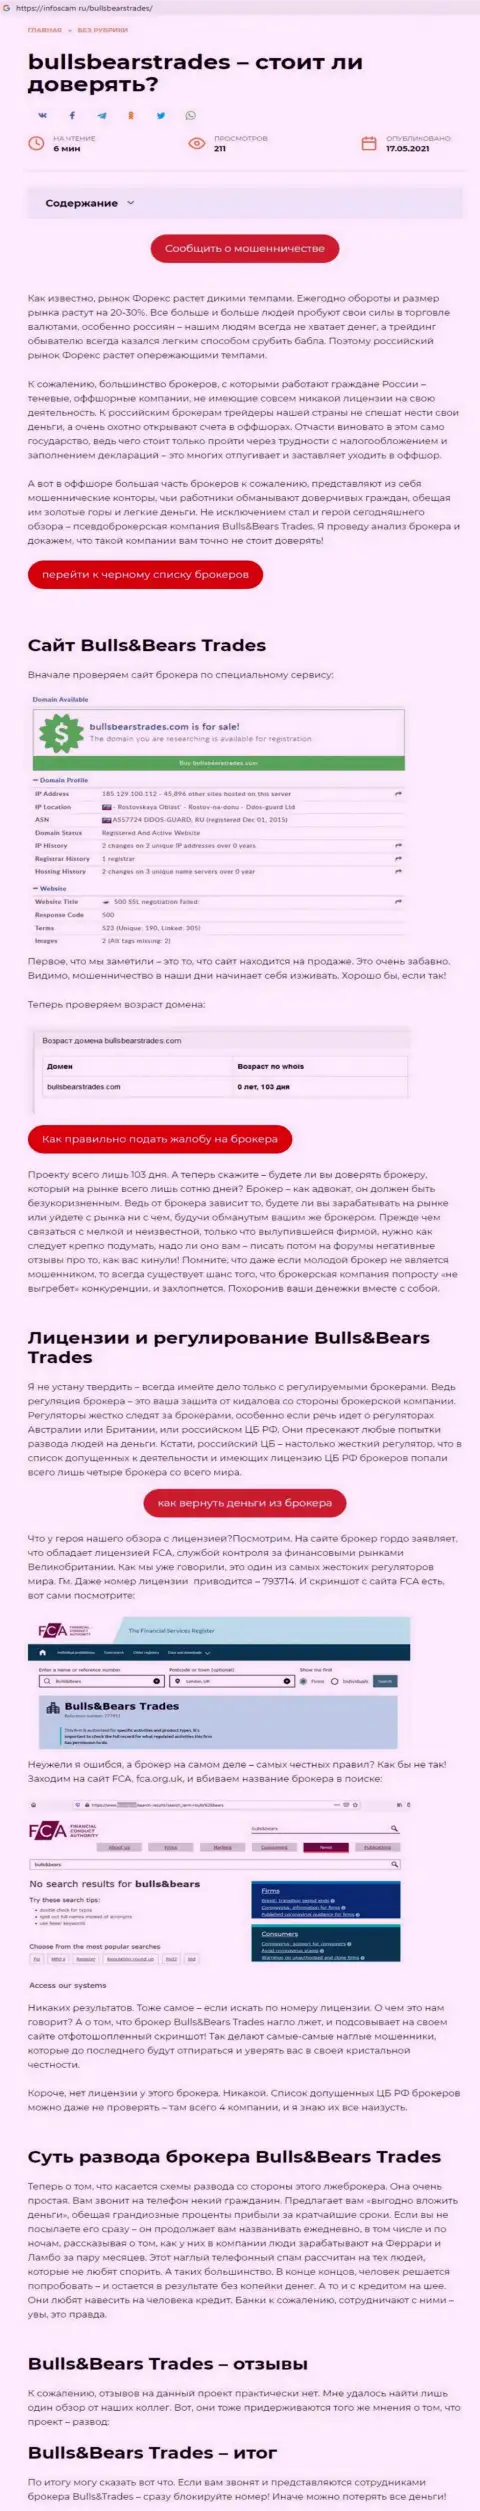 BullsBearsTrades Com - это МОШЕННИК !!! Приемы обувания (обзор мошенничества)